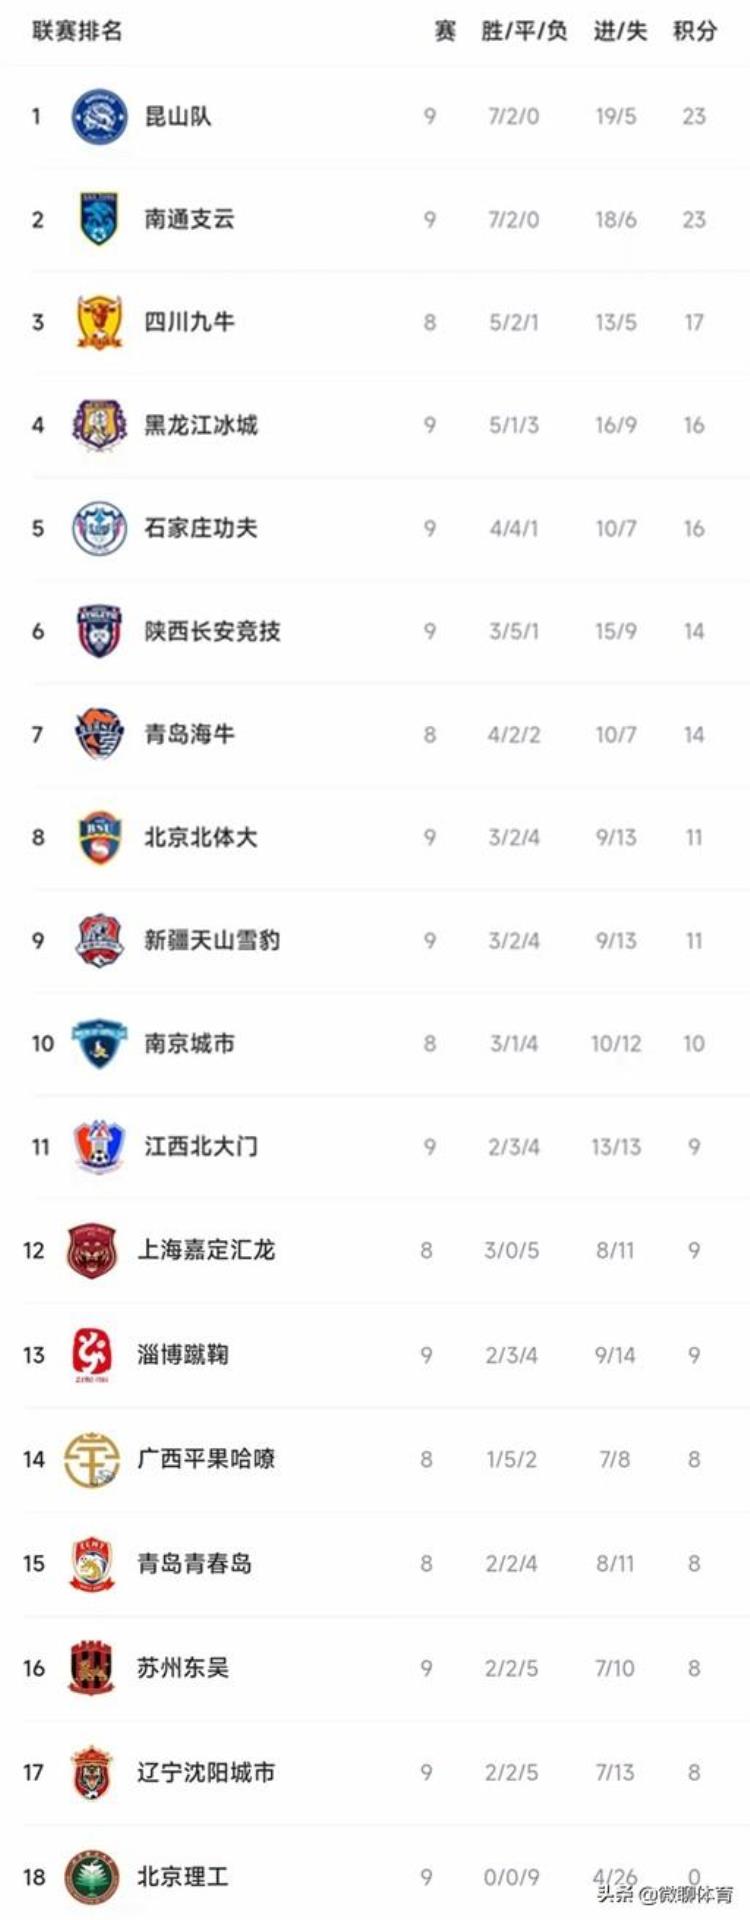 中甲最新积分榜西北狼拿1分排第6北京理工9连败垫底